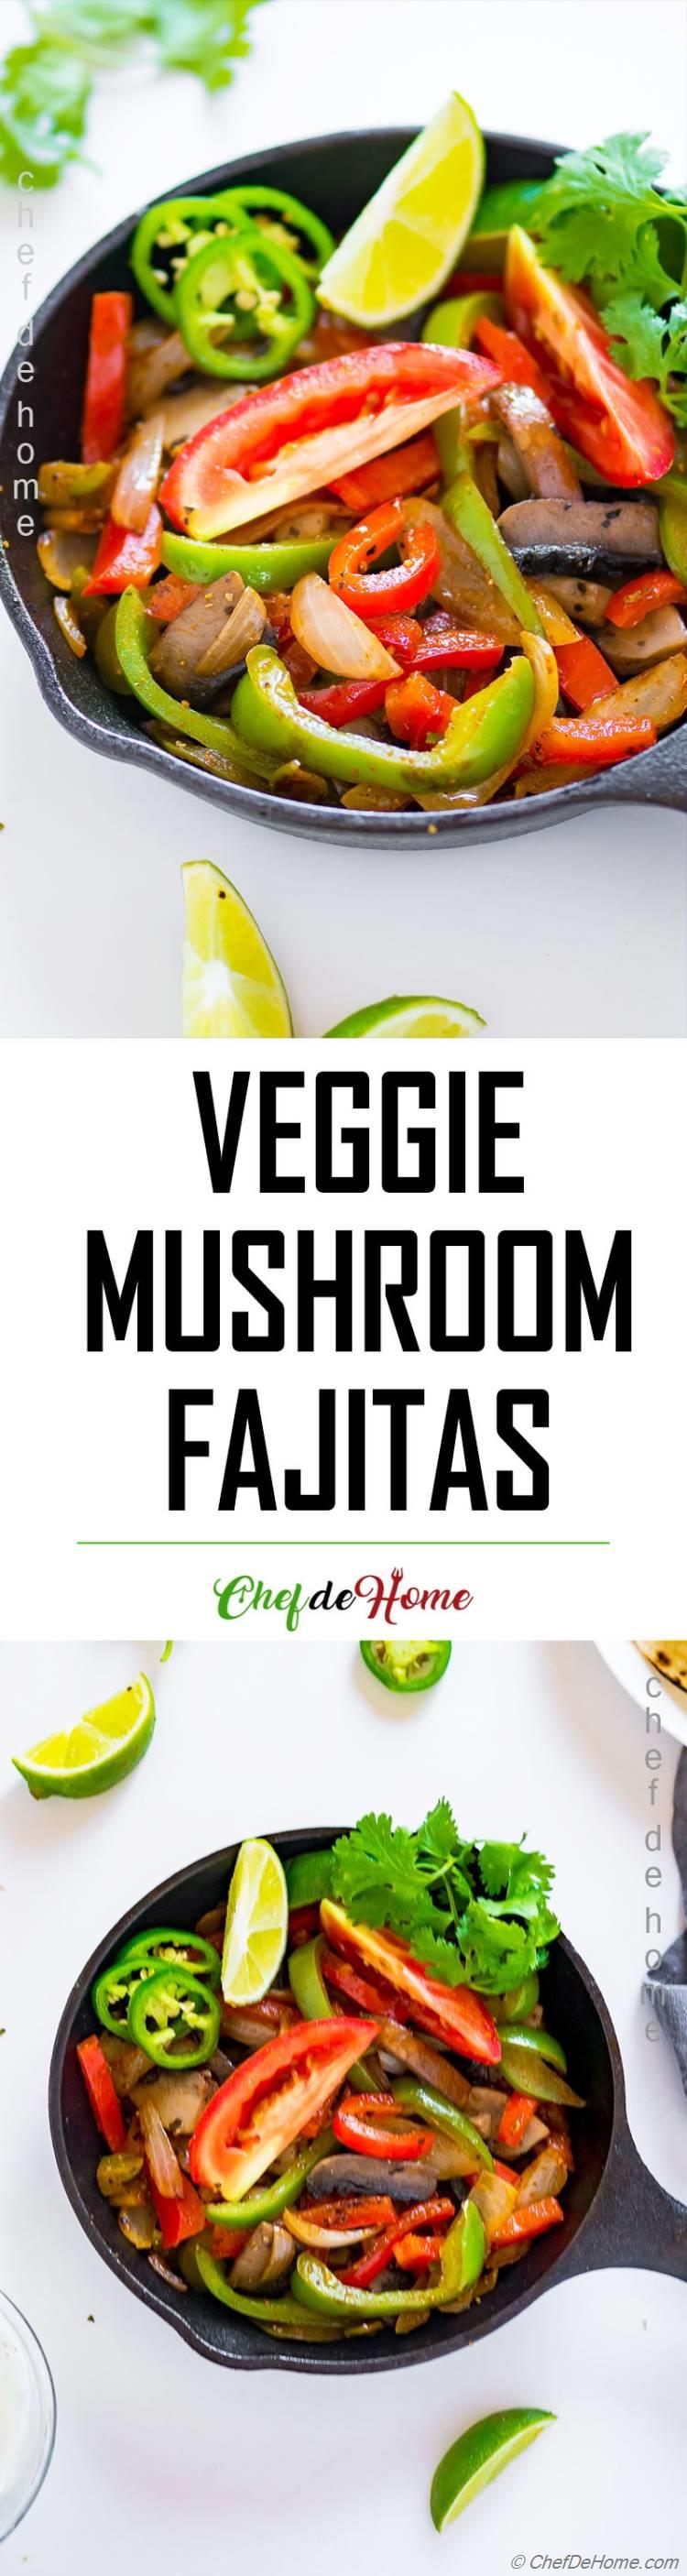 Veggie Fajitas with Homemade Fajita Seaosning